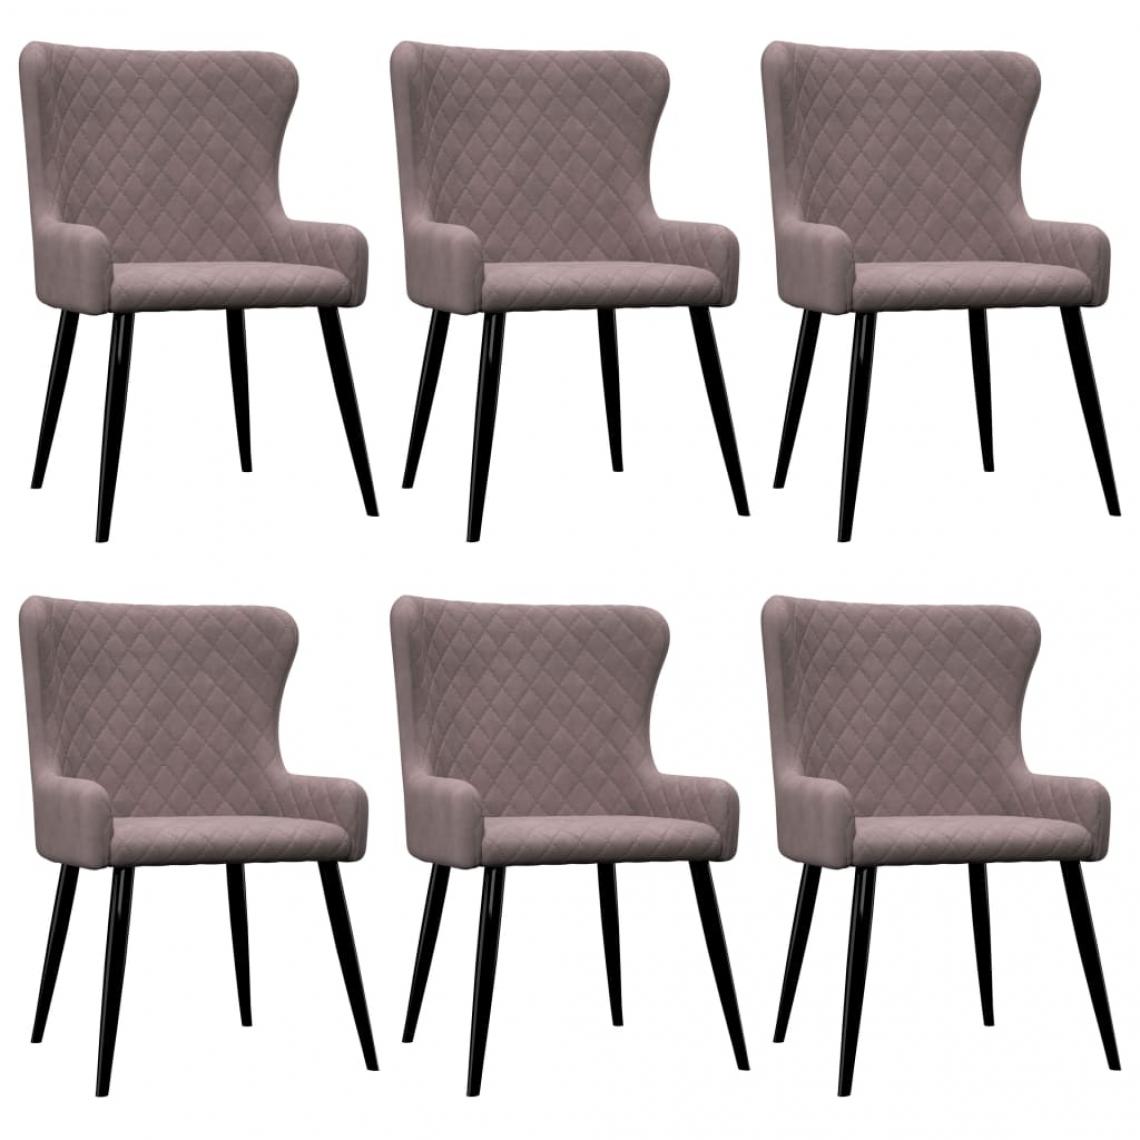 Decoshop26 - Lot de 6 chaises de salle à manger cuisine design moderne velours rose CDS022783 - Chaises